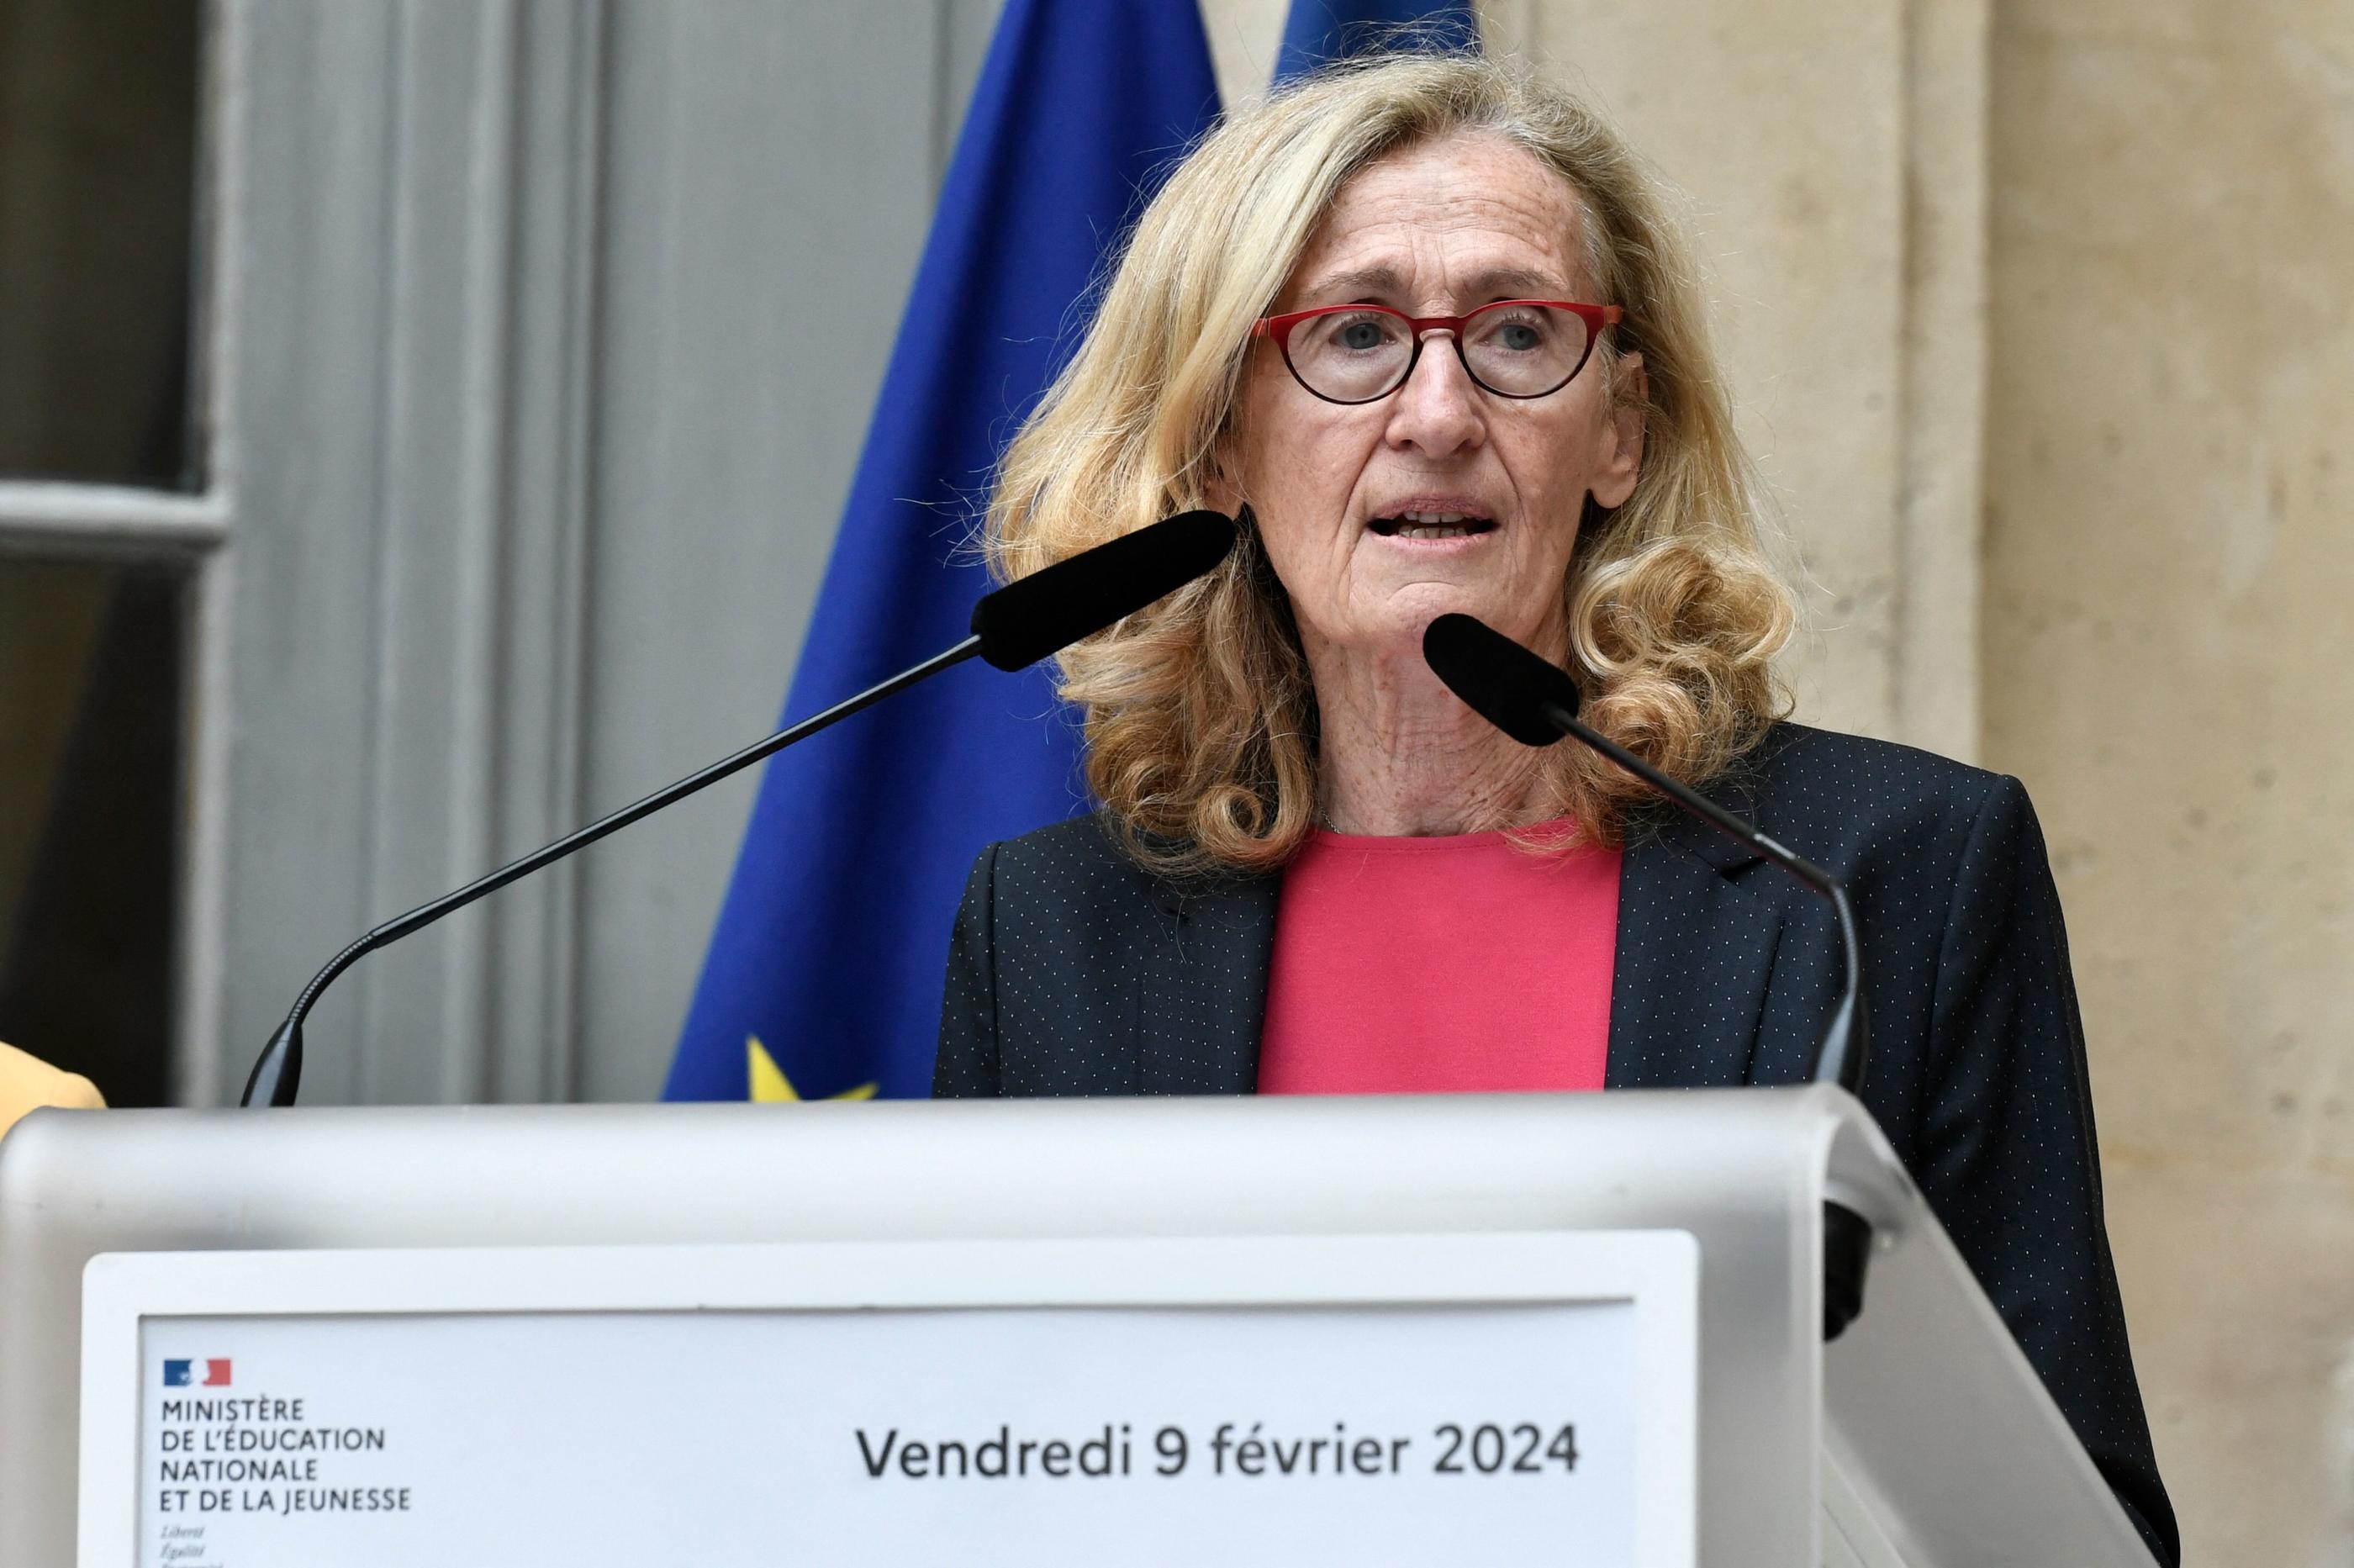 Parmi les dossiers hautement sensibles, Nicole Belloubet devra gérer l’application pour l’année scolaire prochaine des réformes du «choc des savoirs». AFP/Stéphane de Sakutin